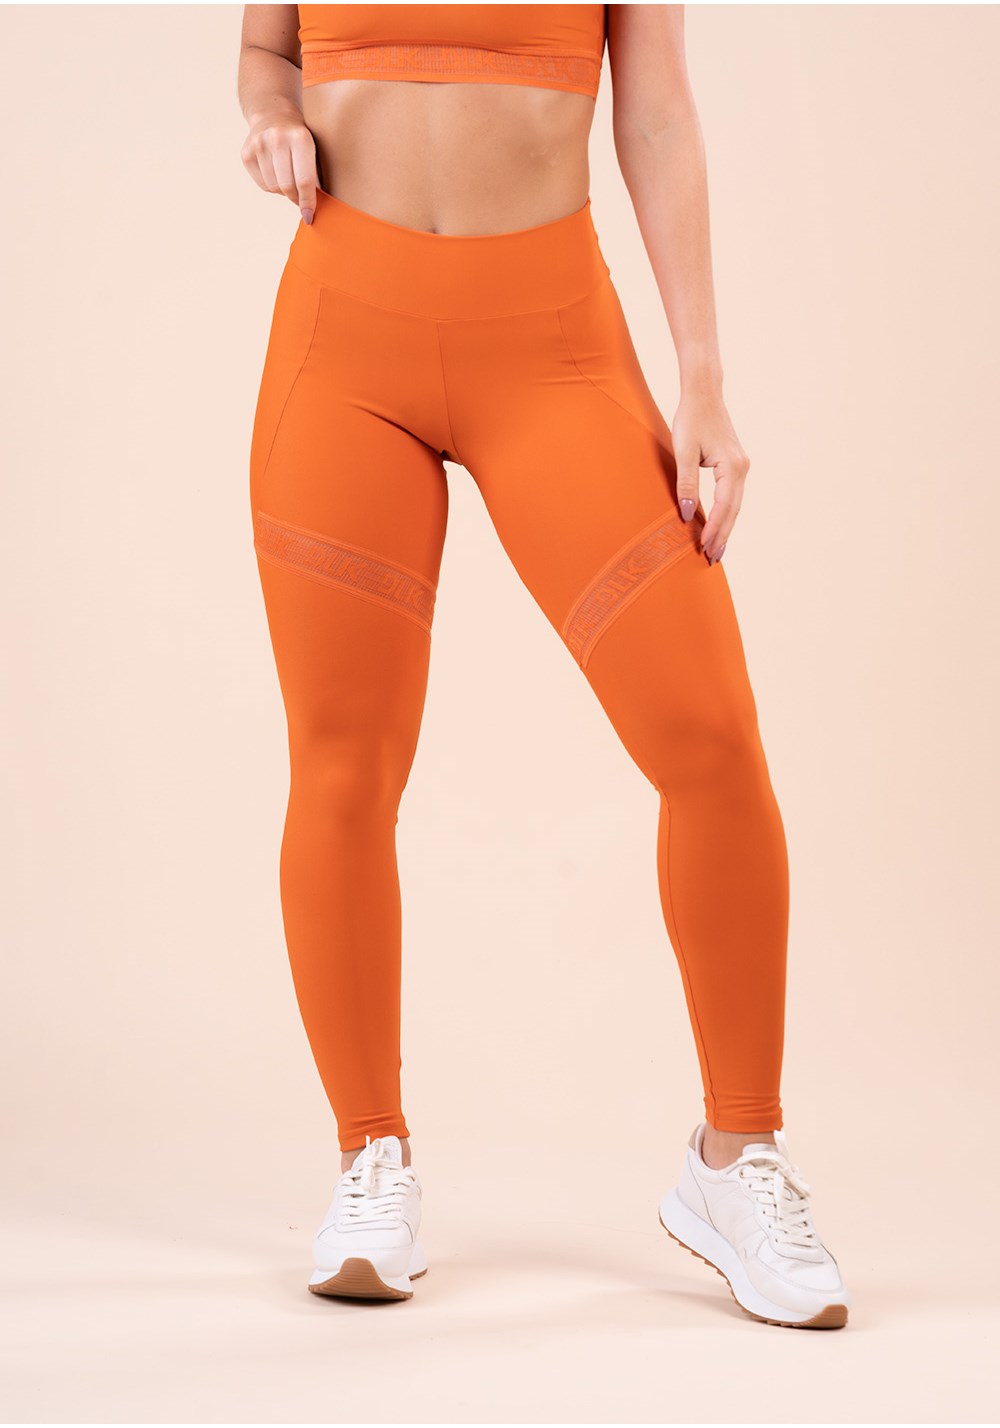 Legging fitness feminina laranja com recorte e elástico vazado action